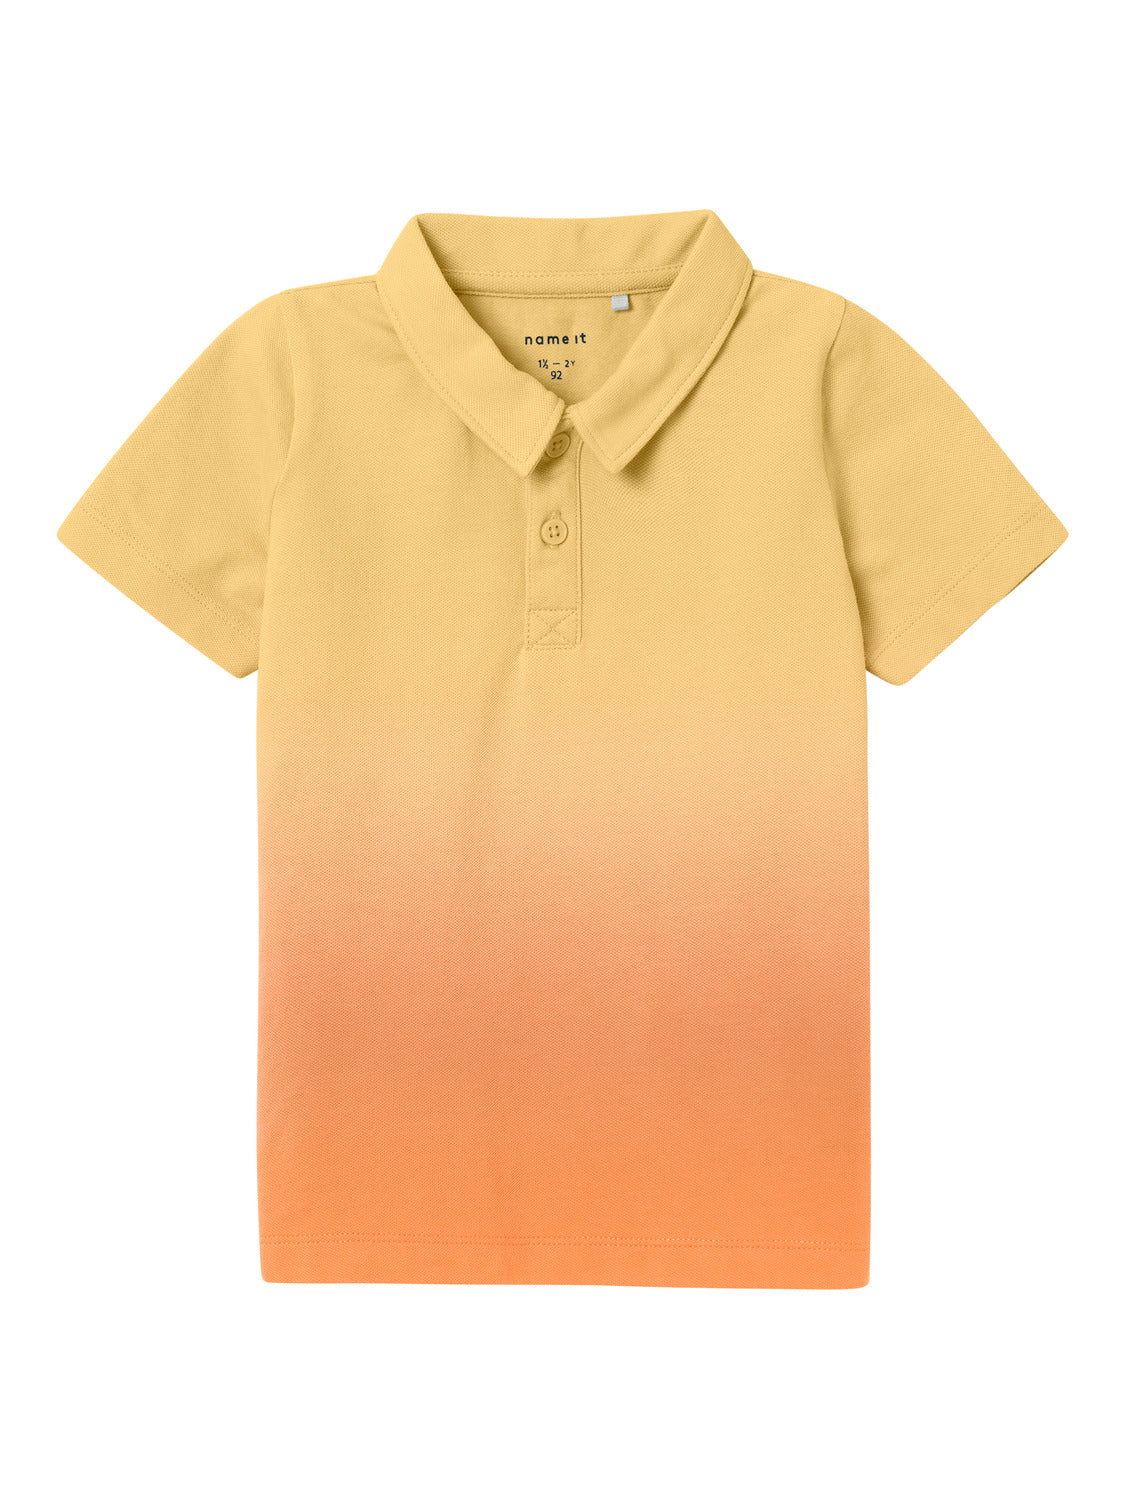 NMMJOMA T-Shirts & Tops - Sundress